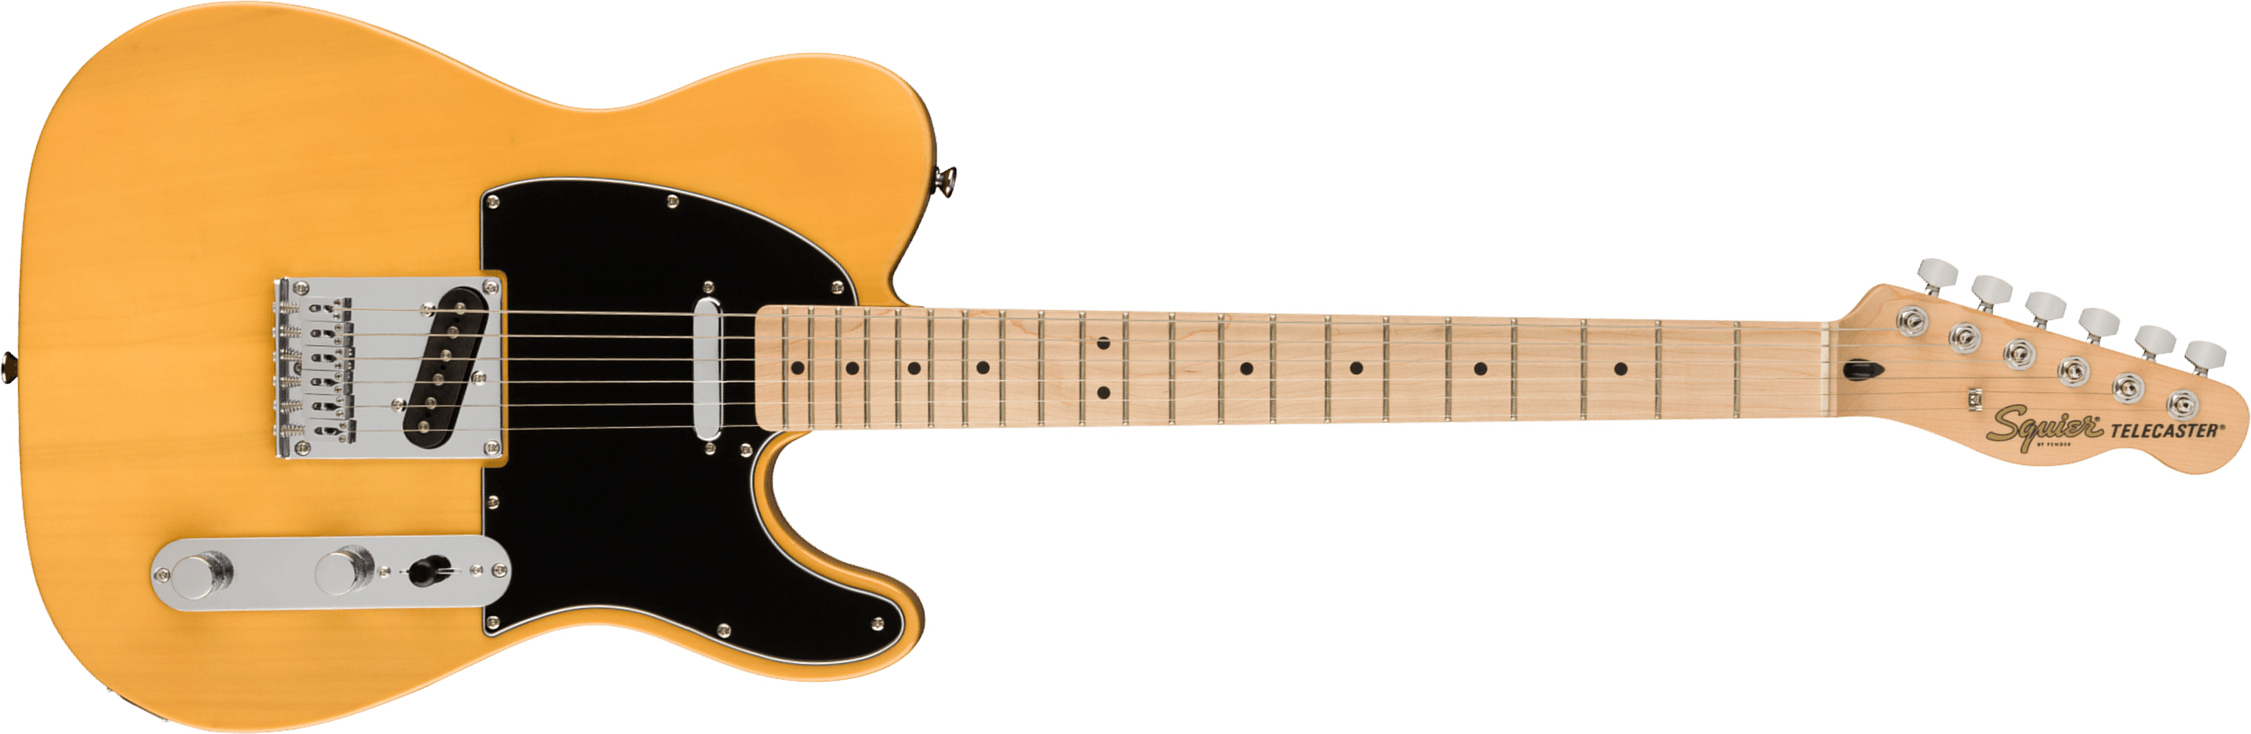 Squier Tele Affinity 2021 2s Mn - Butterscotch Blonde - Televorm elektrische gitaar - Main picture